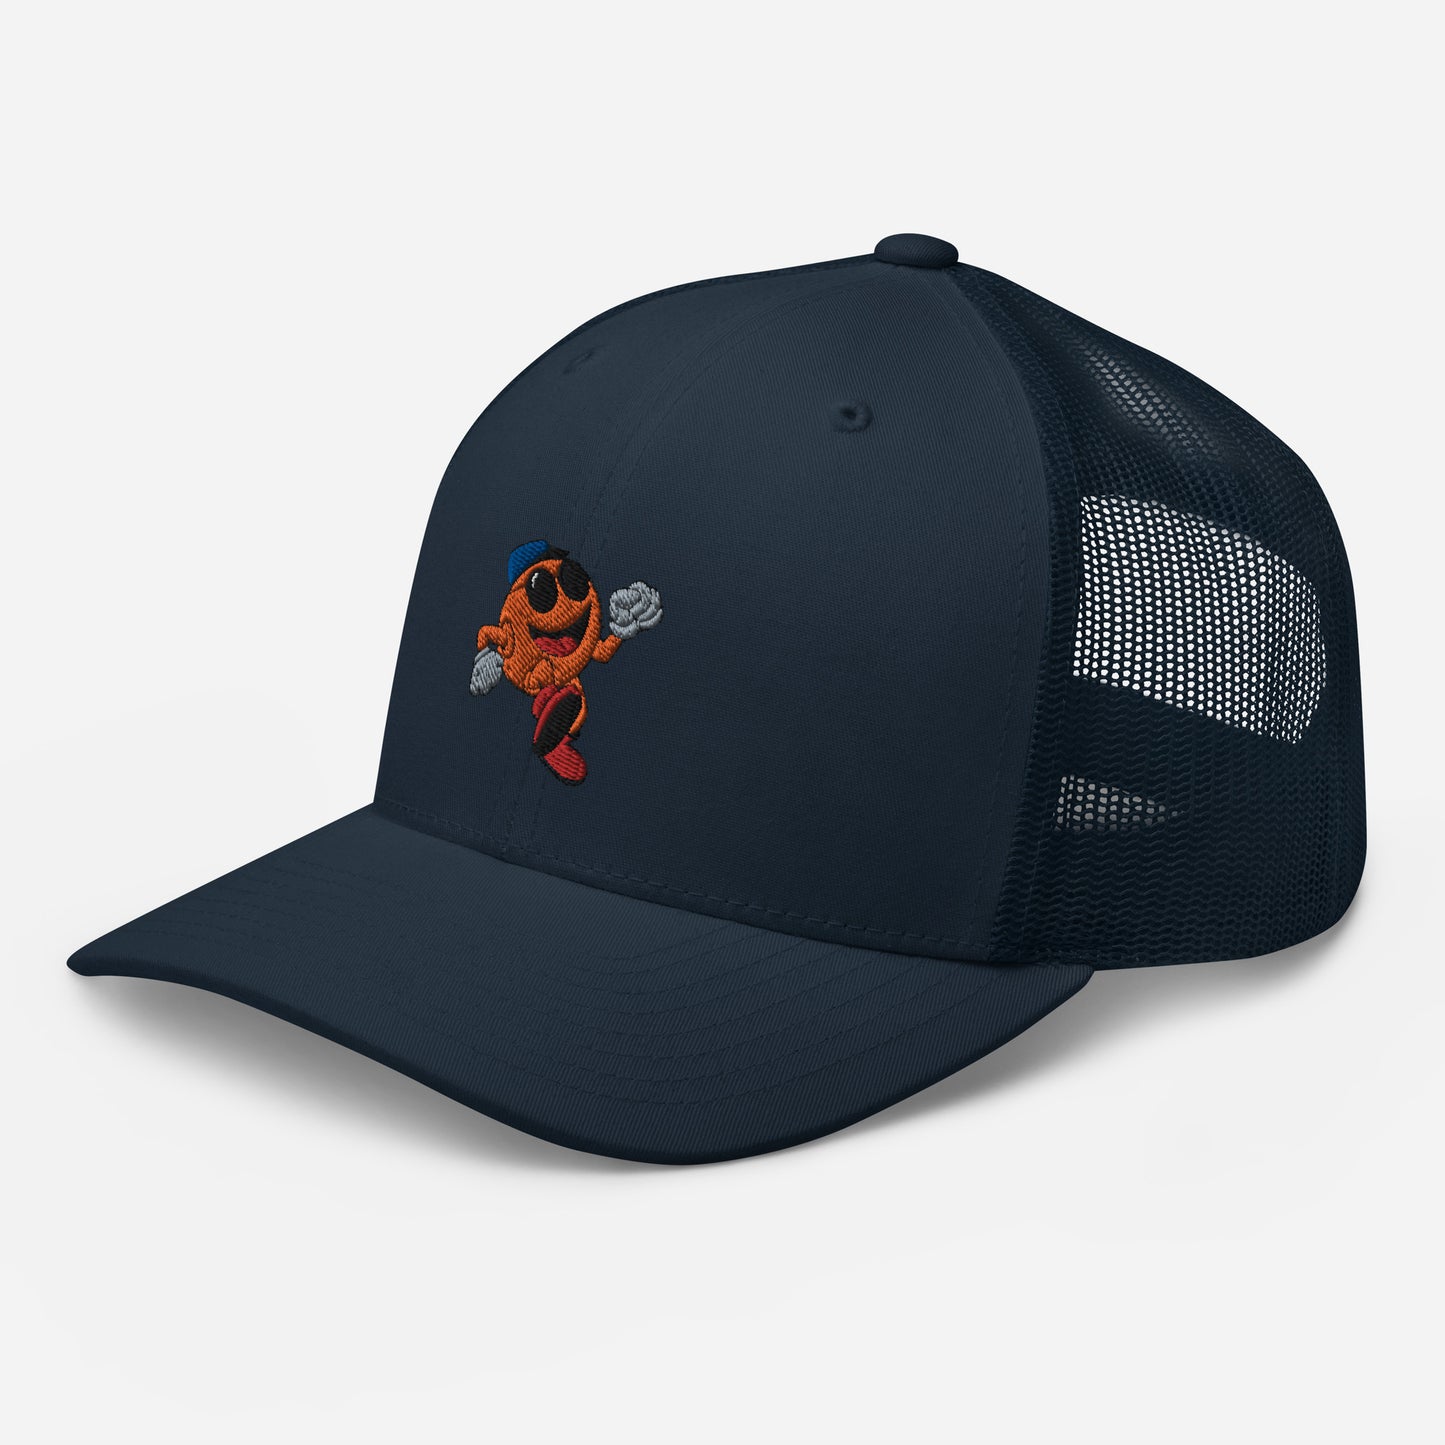 Orange Trucker Cap